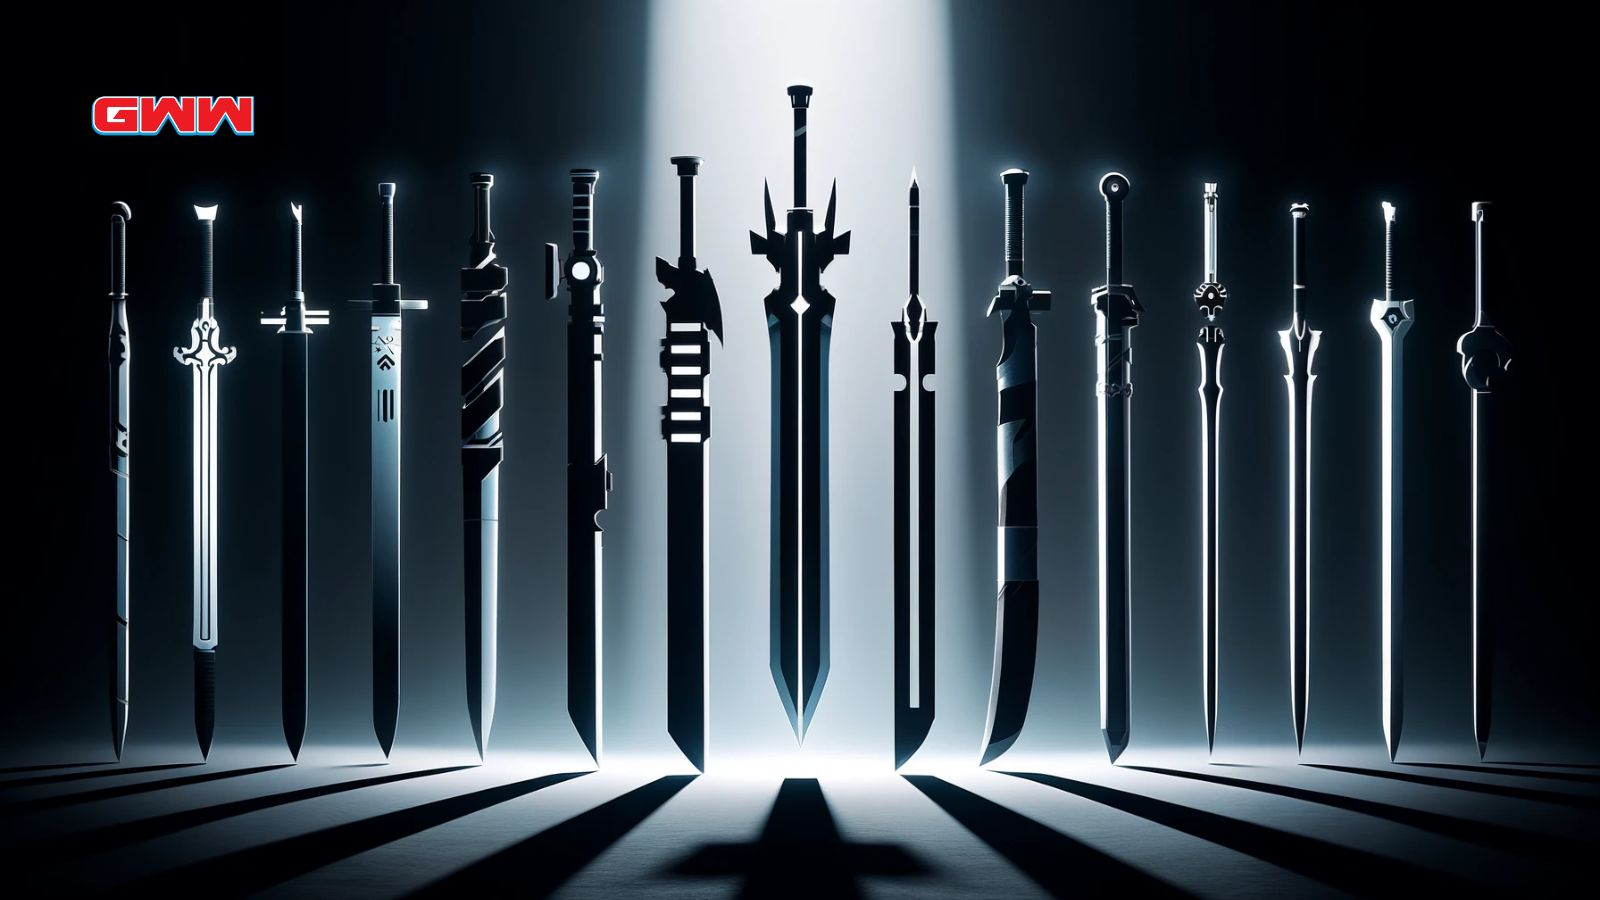 Alineación de espadas de anime resaltada con iluminación dramática.